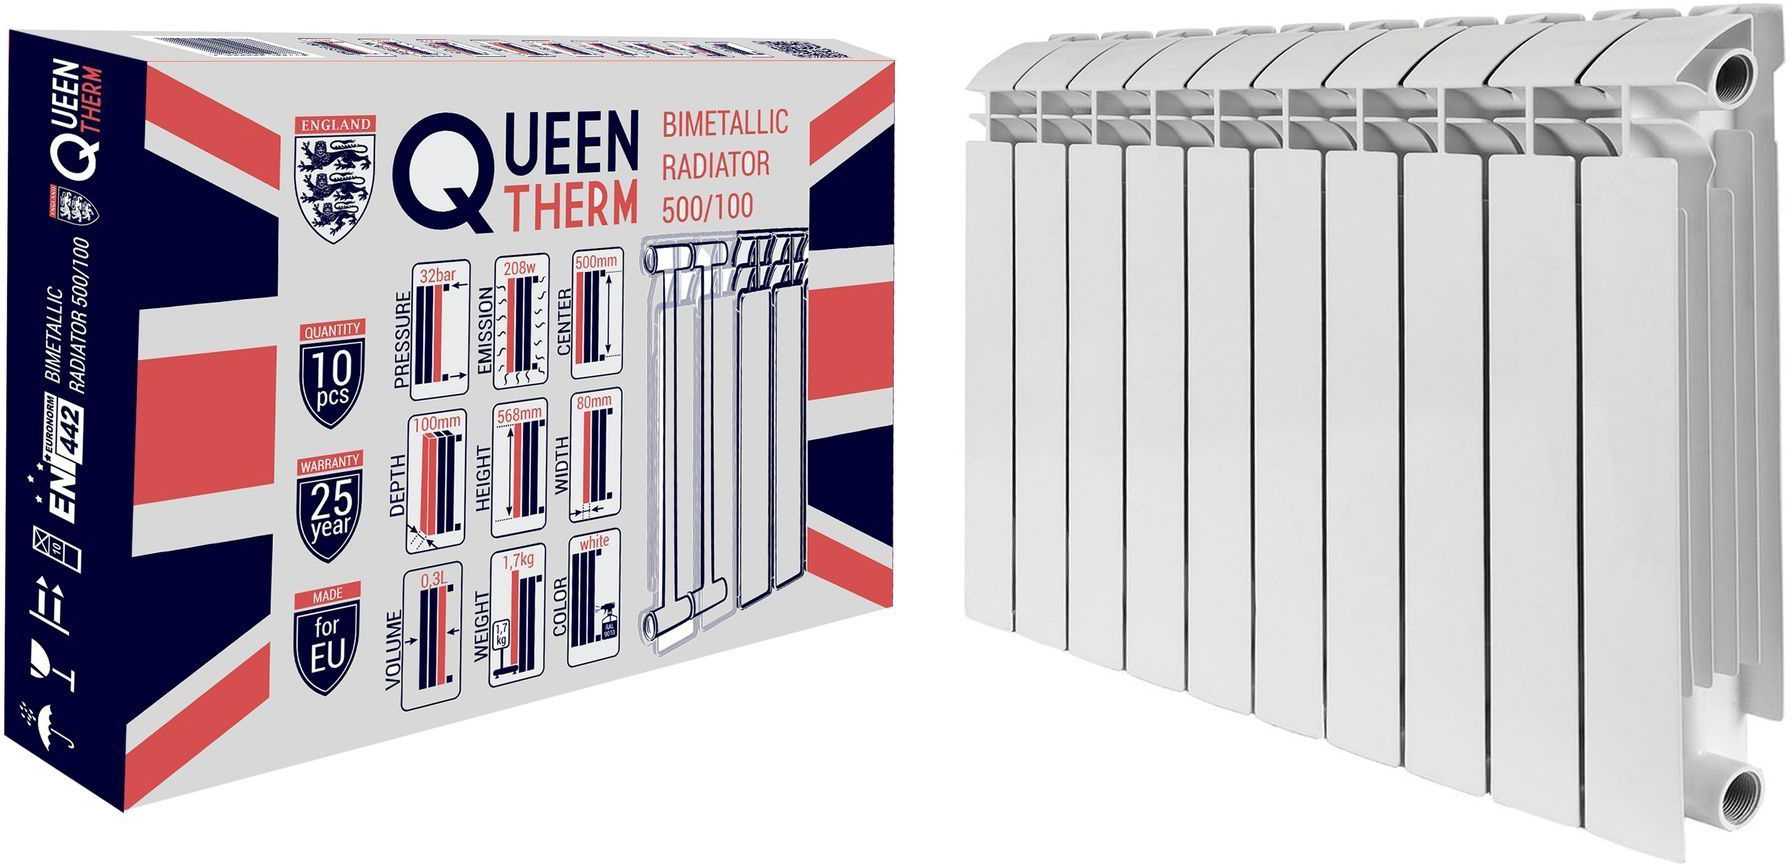 Радиатор для отопления Queen Therm 500/100 (кратно 10) в интернет-магазине, главное фото